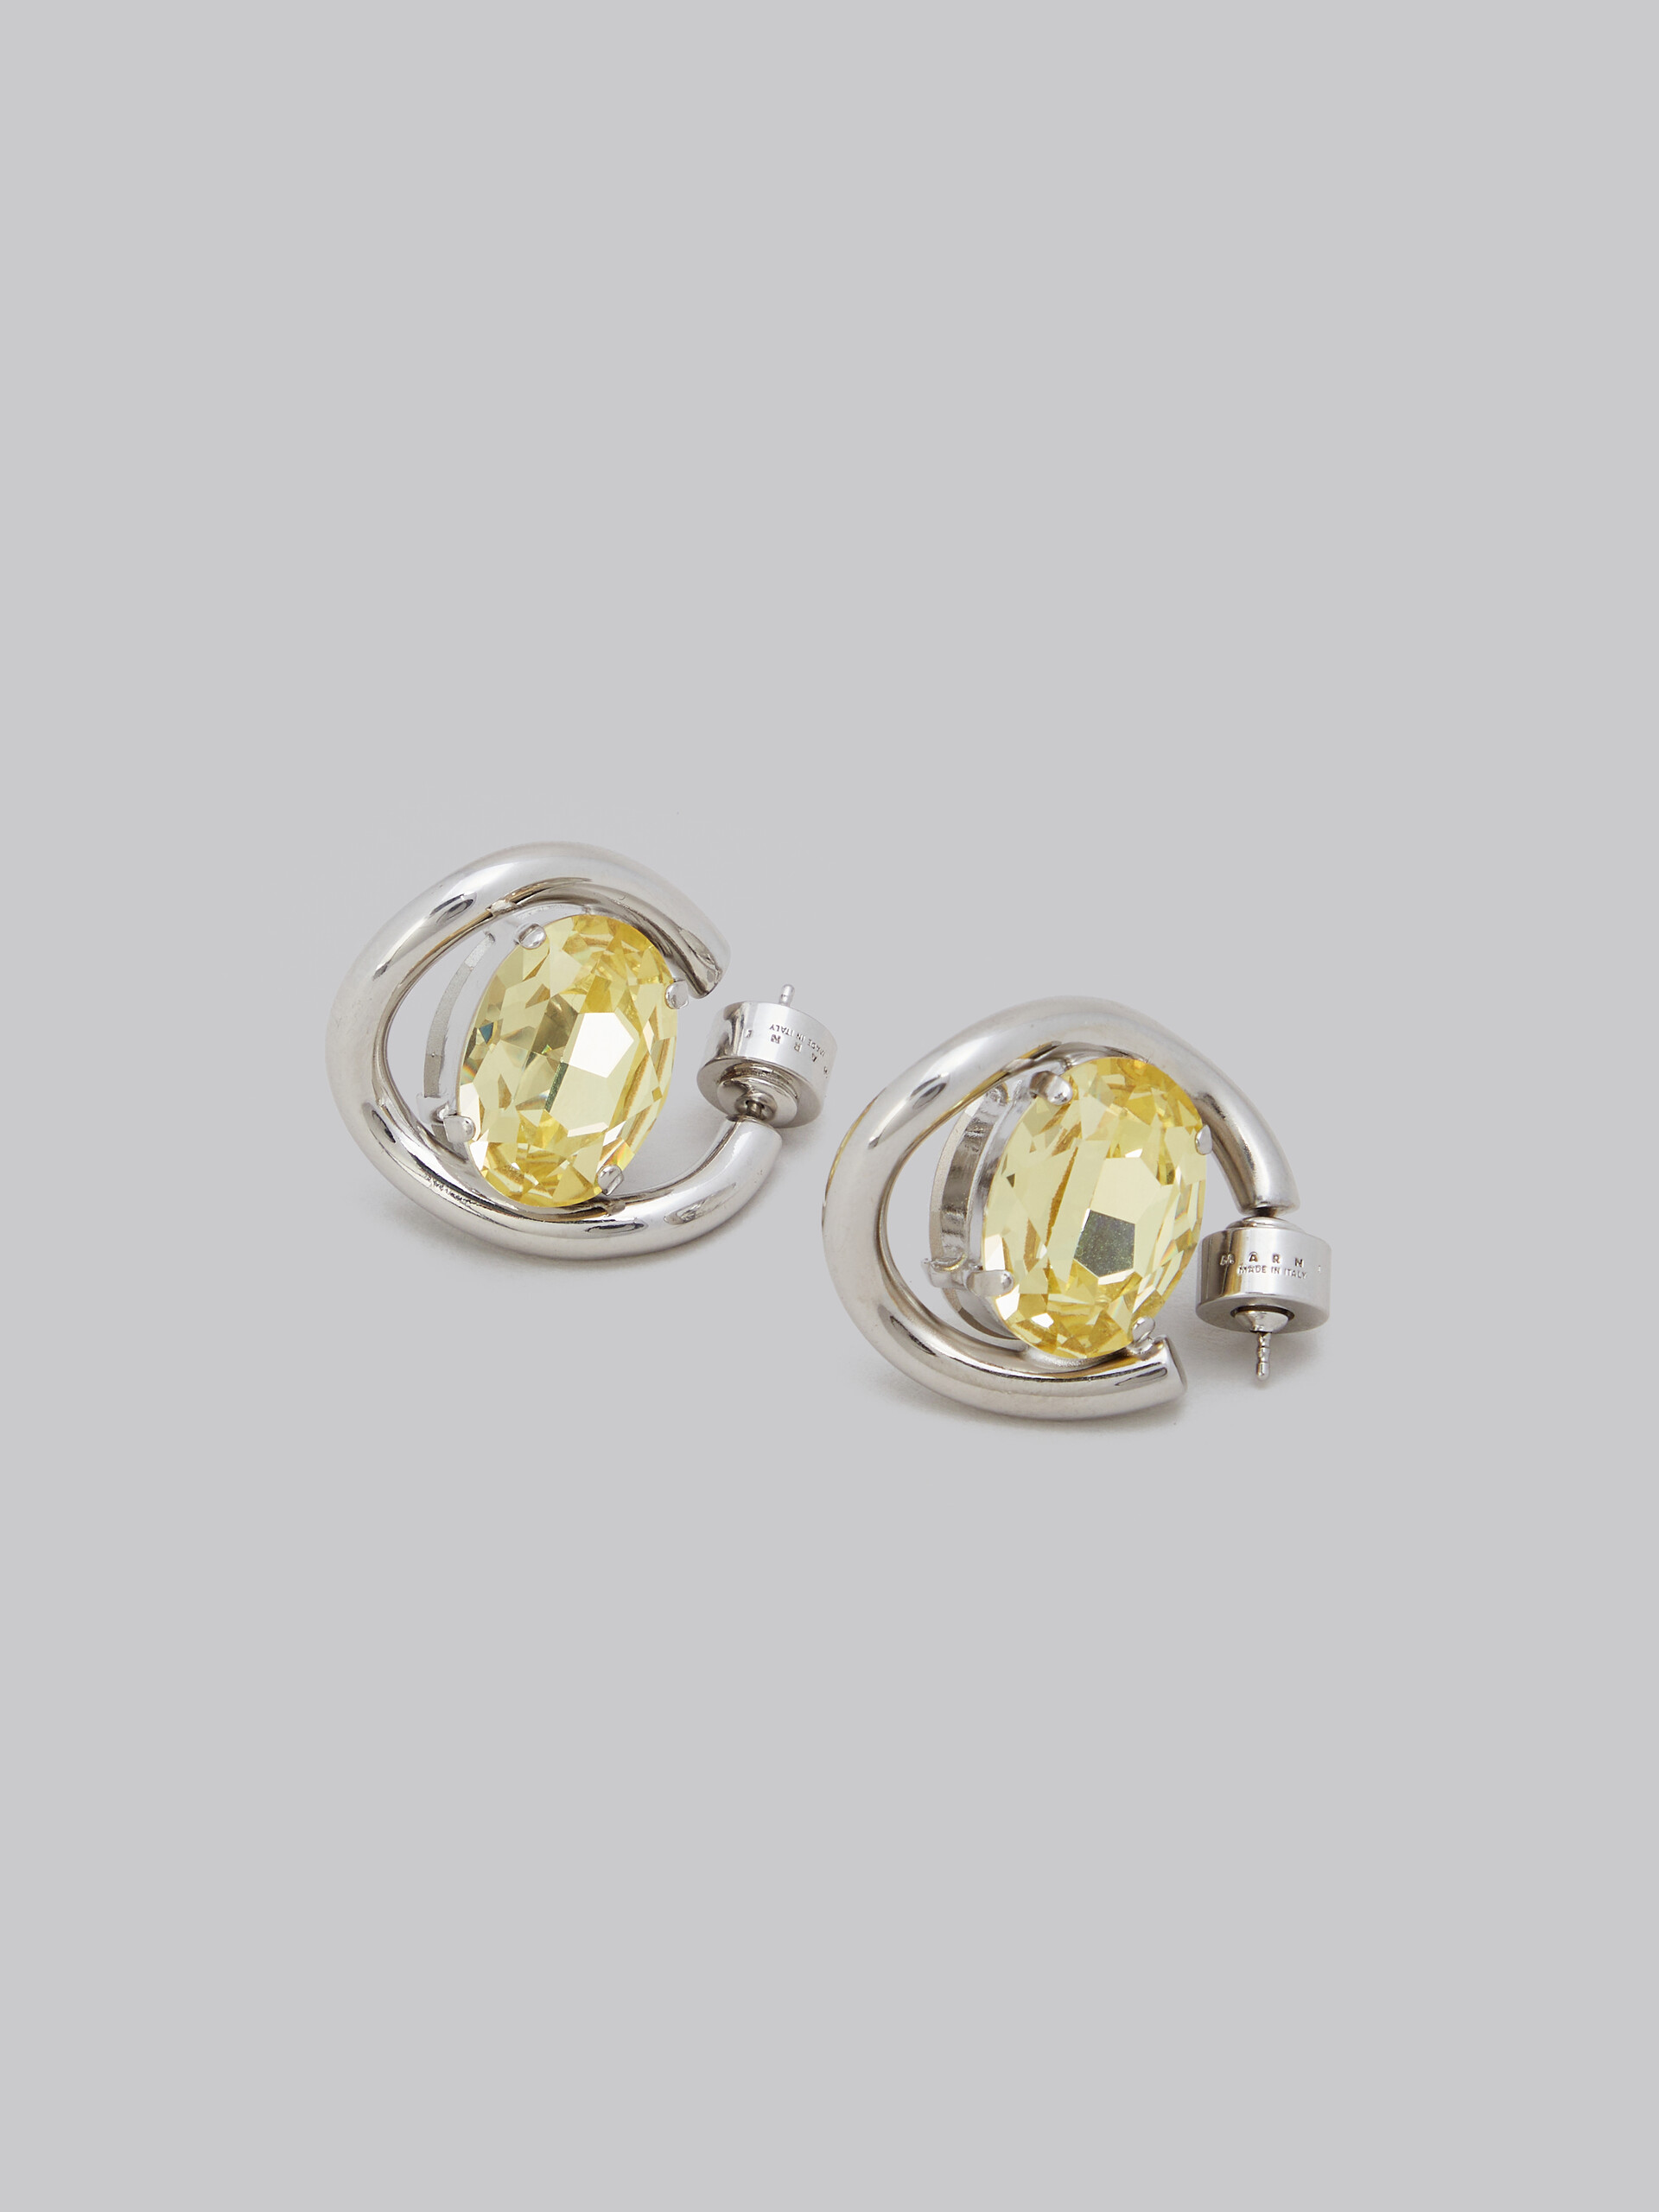 Boucles d’oreilles créoles torsadées avec strass transparents et jaunes - Boucles d’oreilles - Image 4